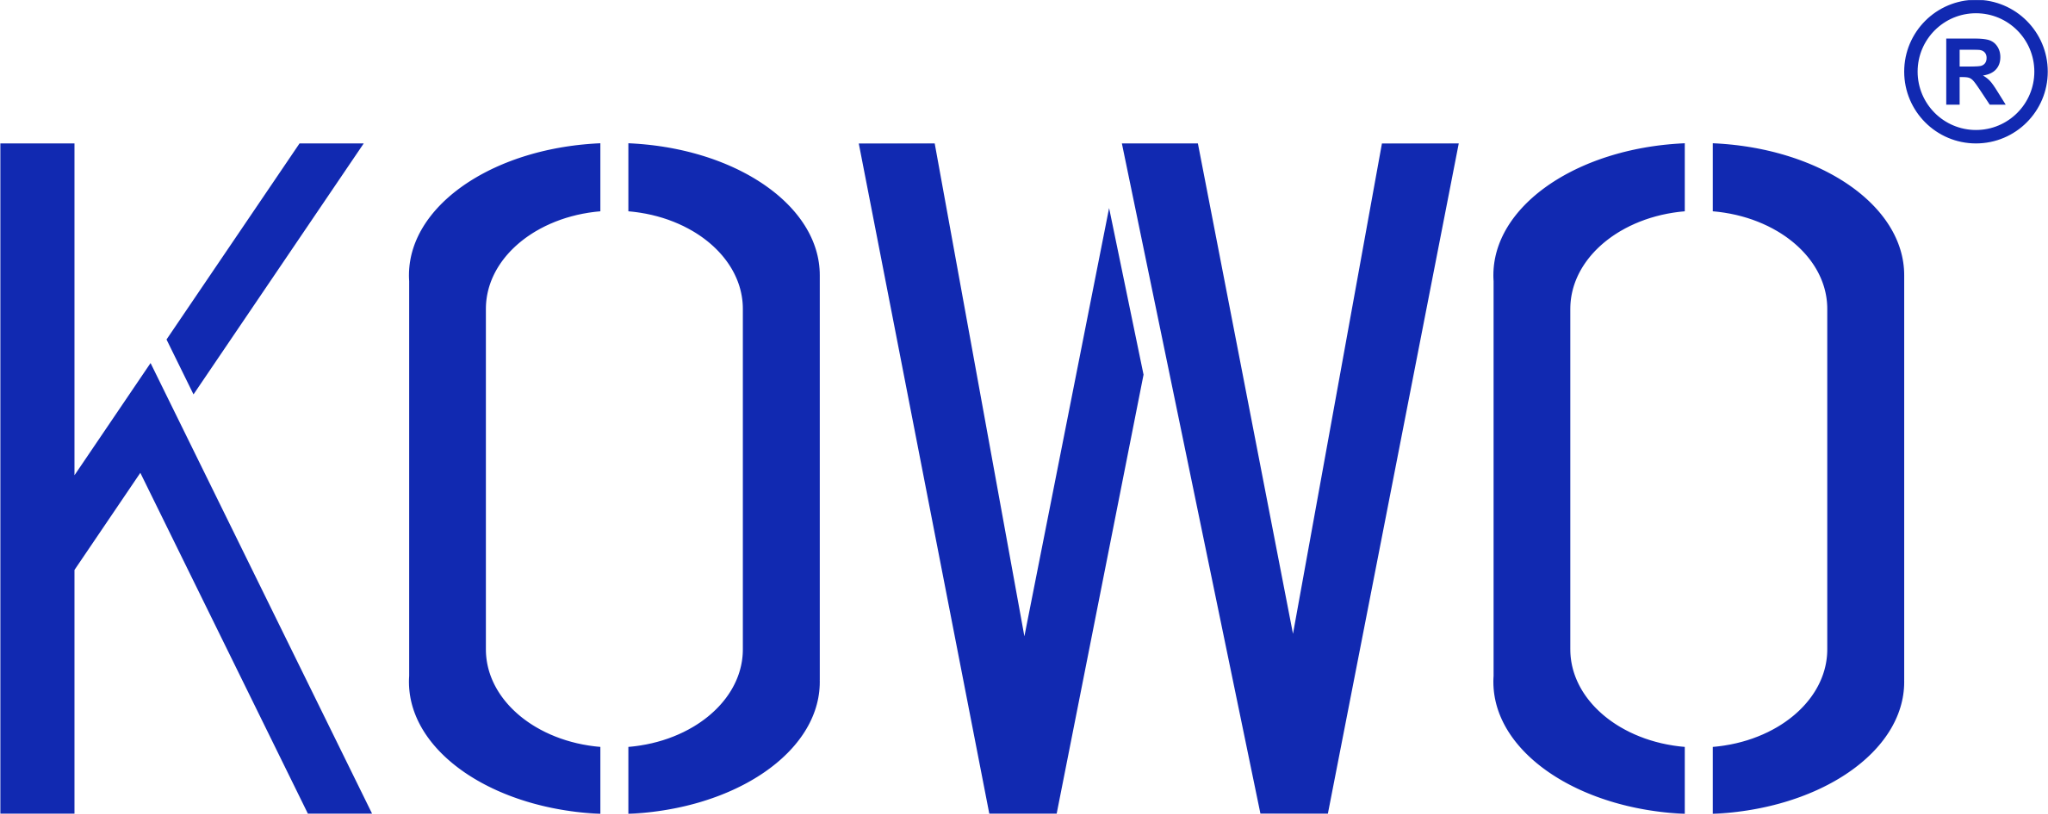 KOWO logo image